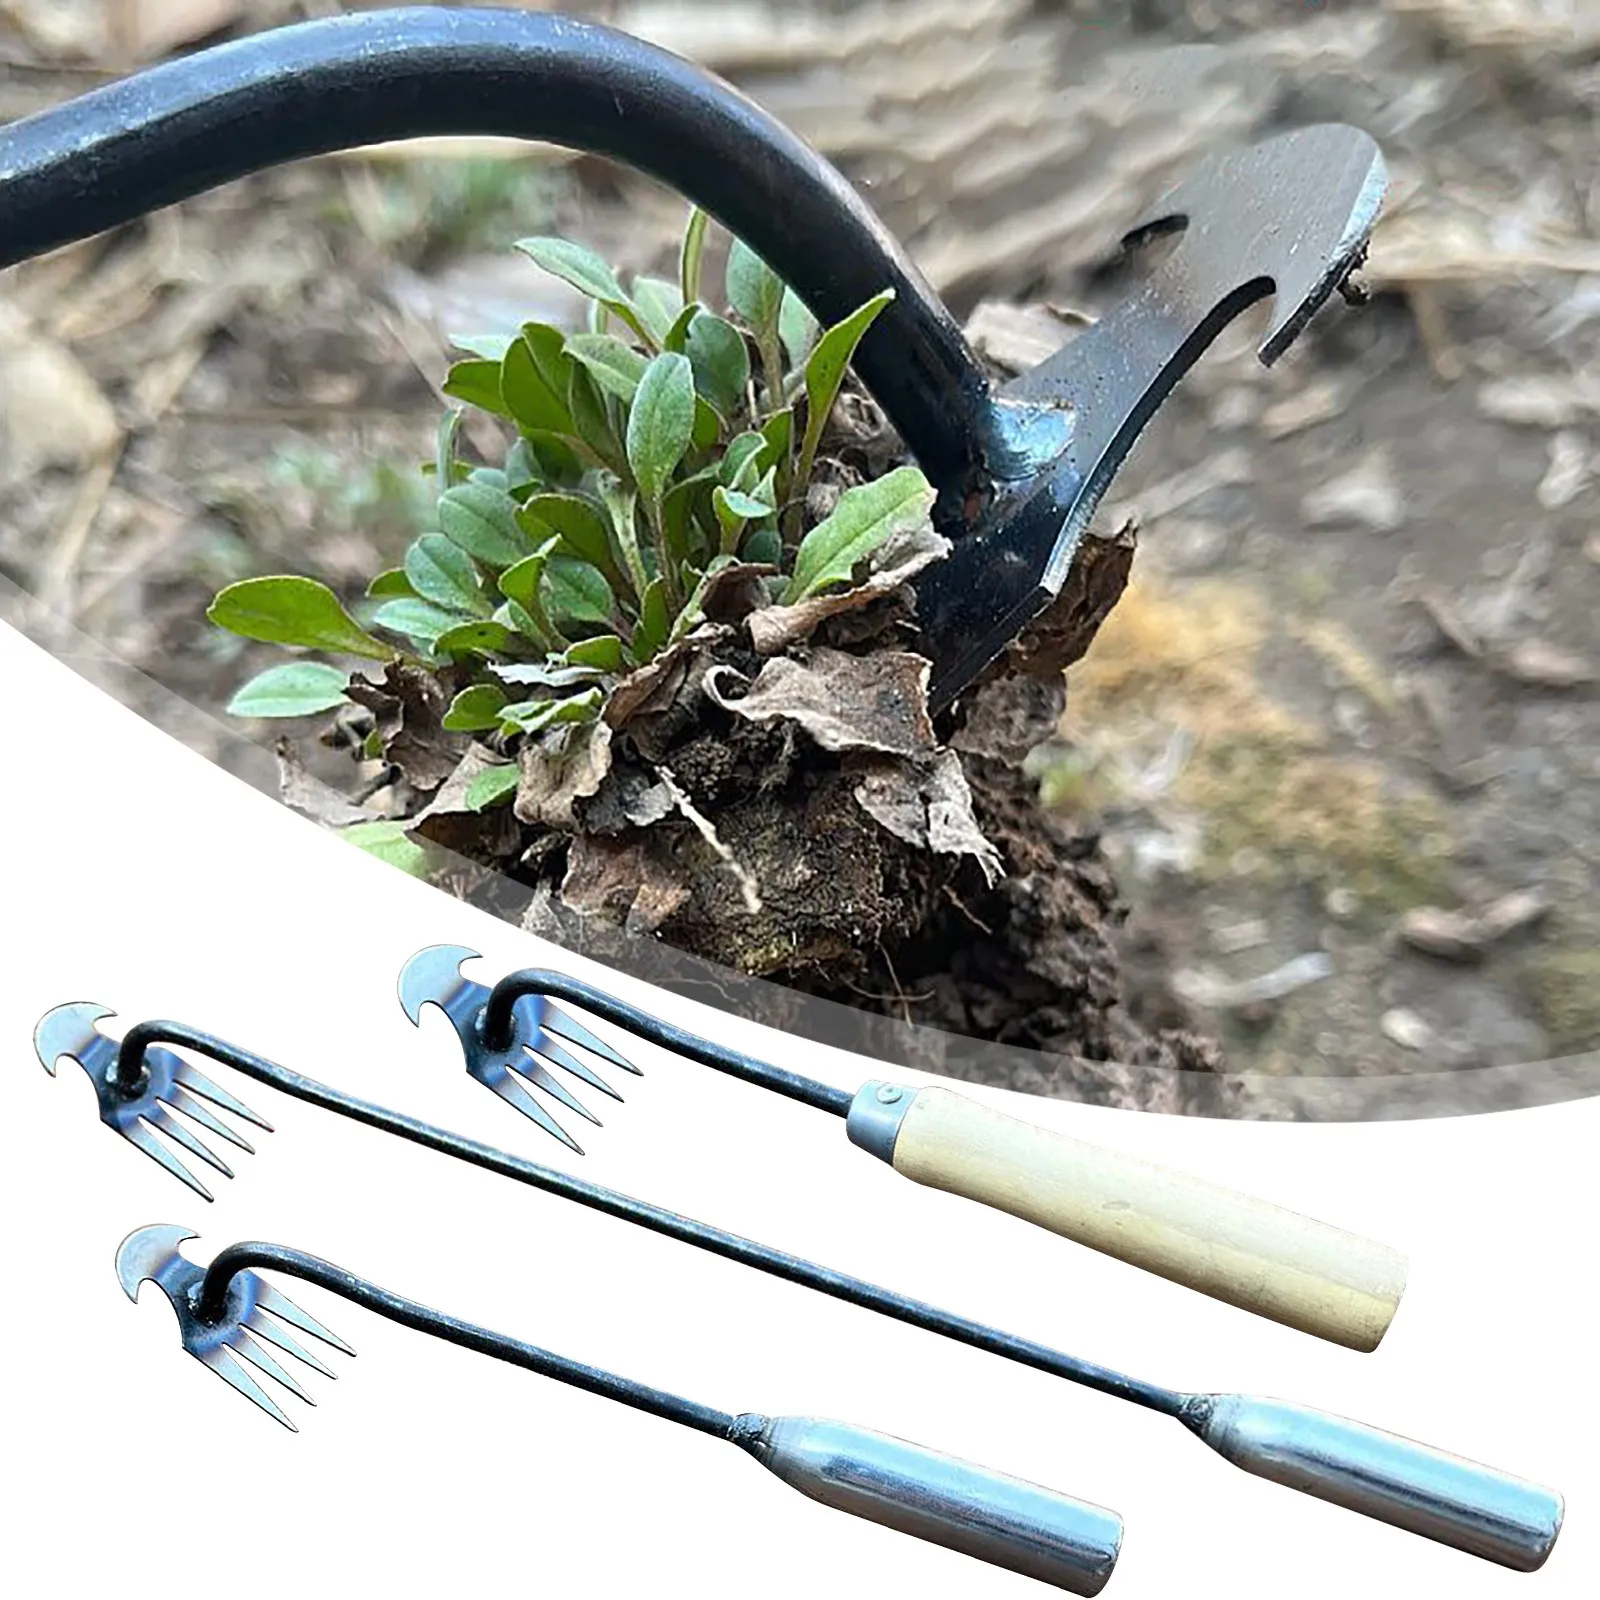 

Hoe Weeding Artifact Rooting Weeding Tools Gardening Weeding Rake Steel Farm Tools Small Hoe Loose Soil Digging Wild Vegetables